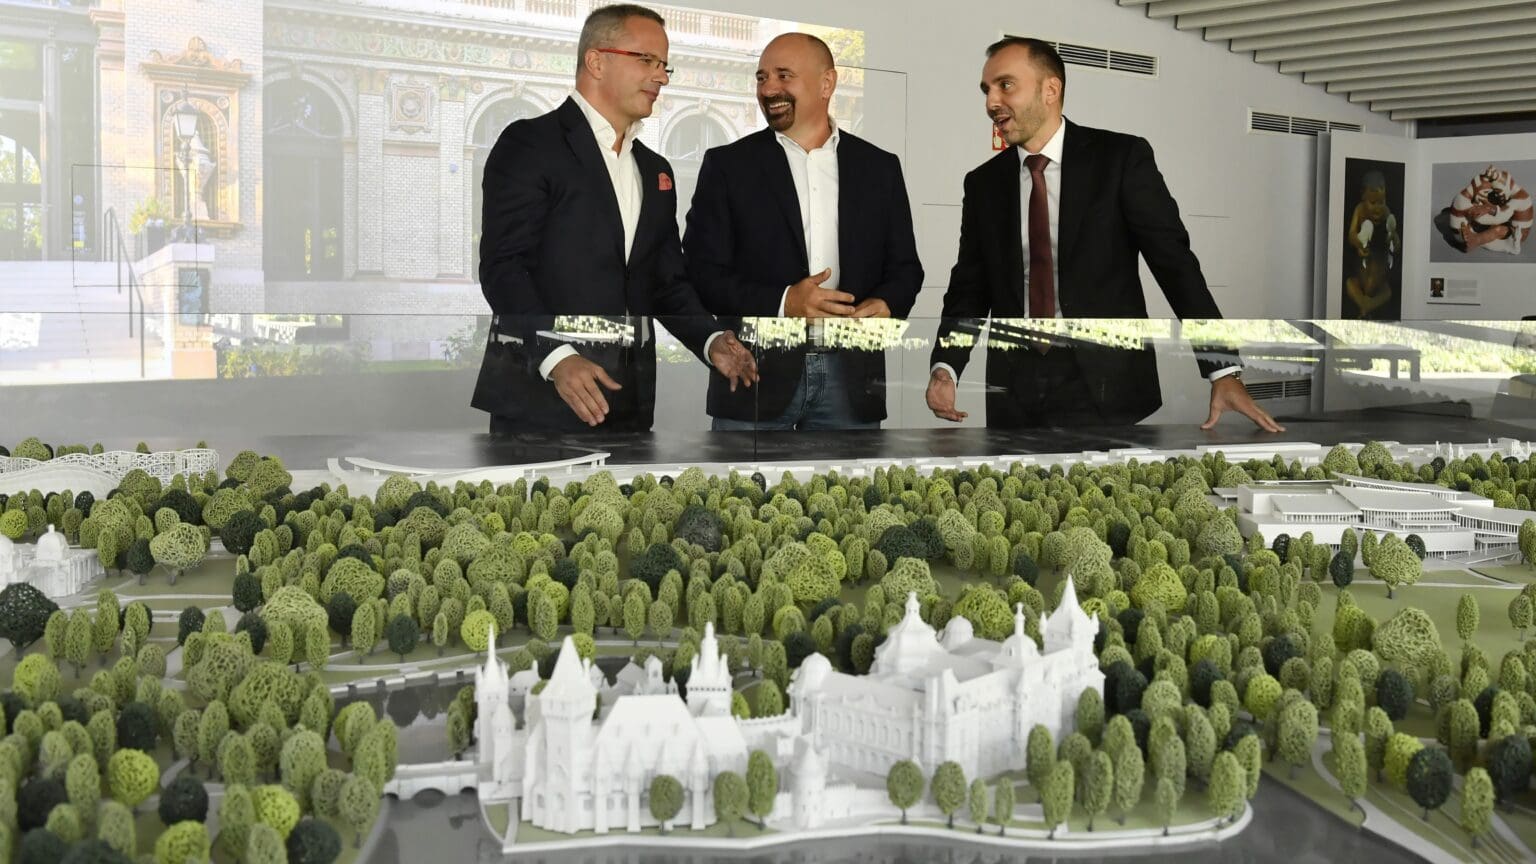 Liget Budapest Project Triumphs as Europe’s Premier Tourism Development